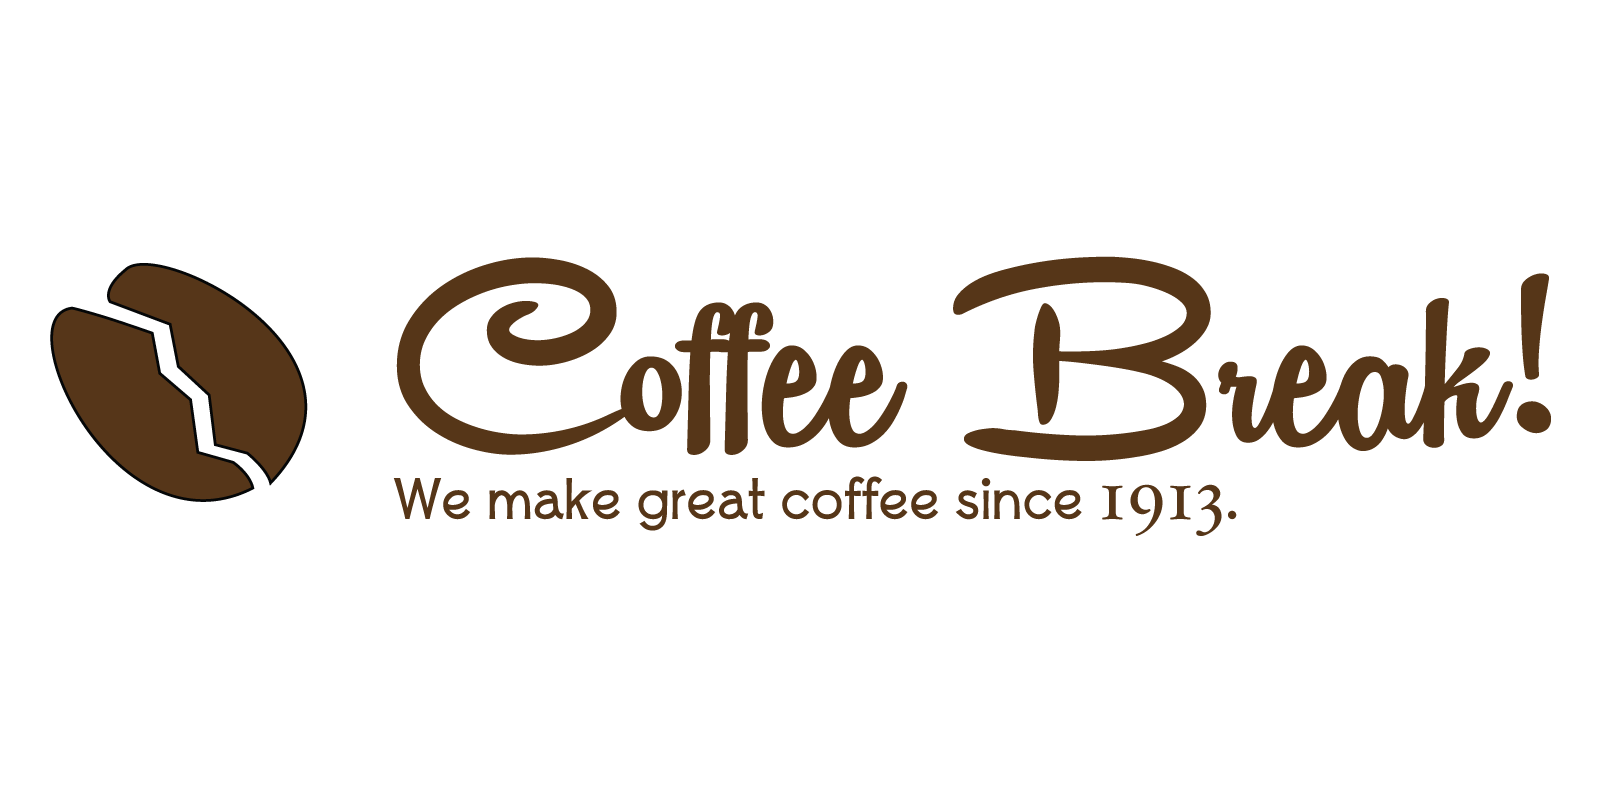 Break Logo - Coffee Break Logo - Portfolio - Busolini Francesco